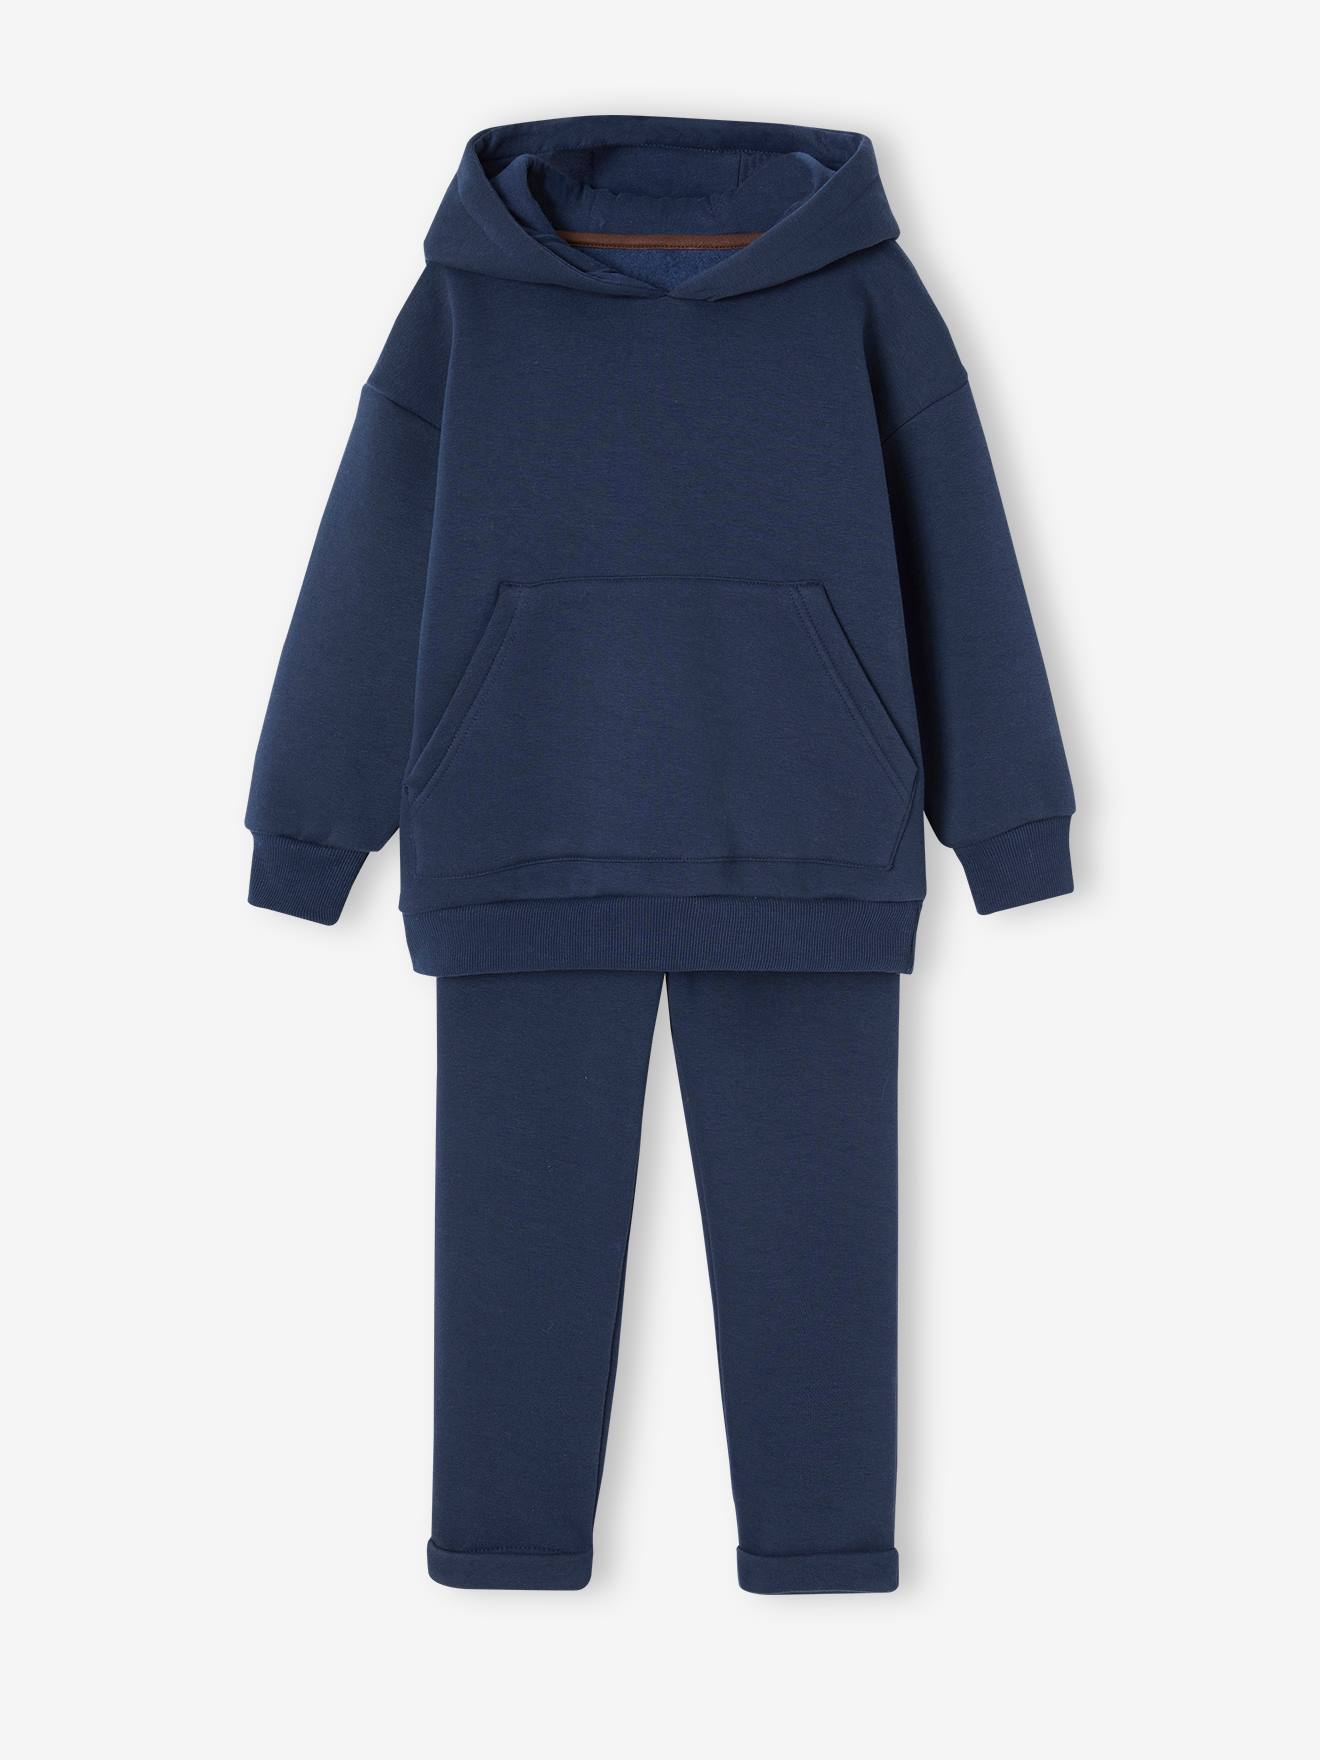 Sportieve set sweater met capuchon + joggingbroek voor jongens nachtblauw